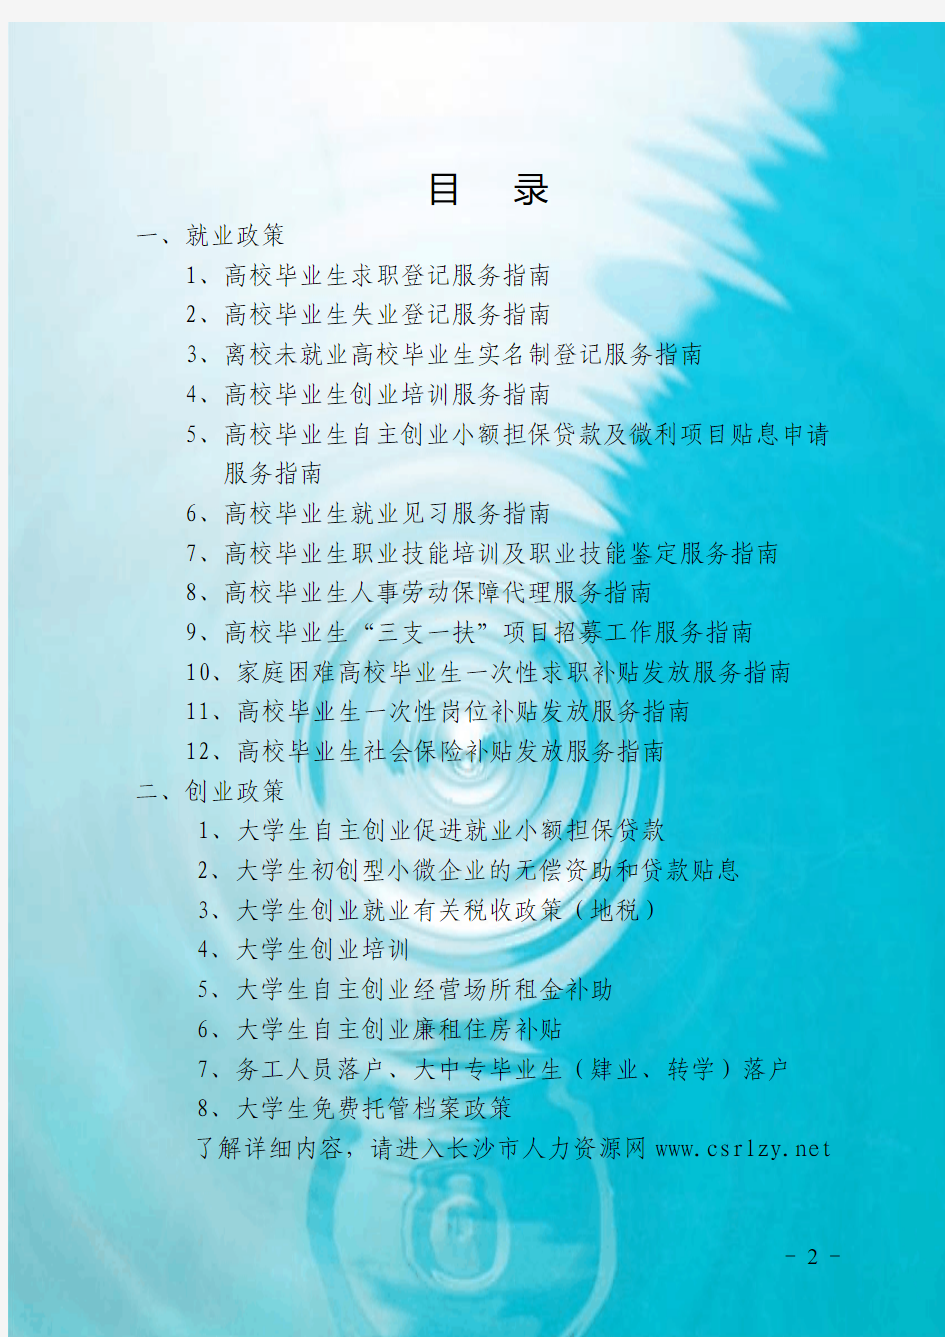 湖南省高校毕业生公共就业服务指南(2014年)确定